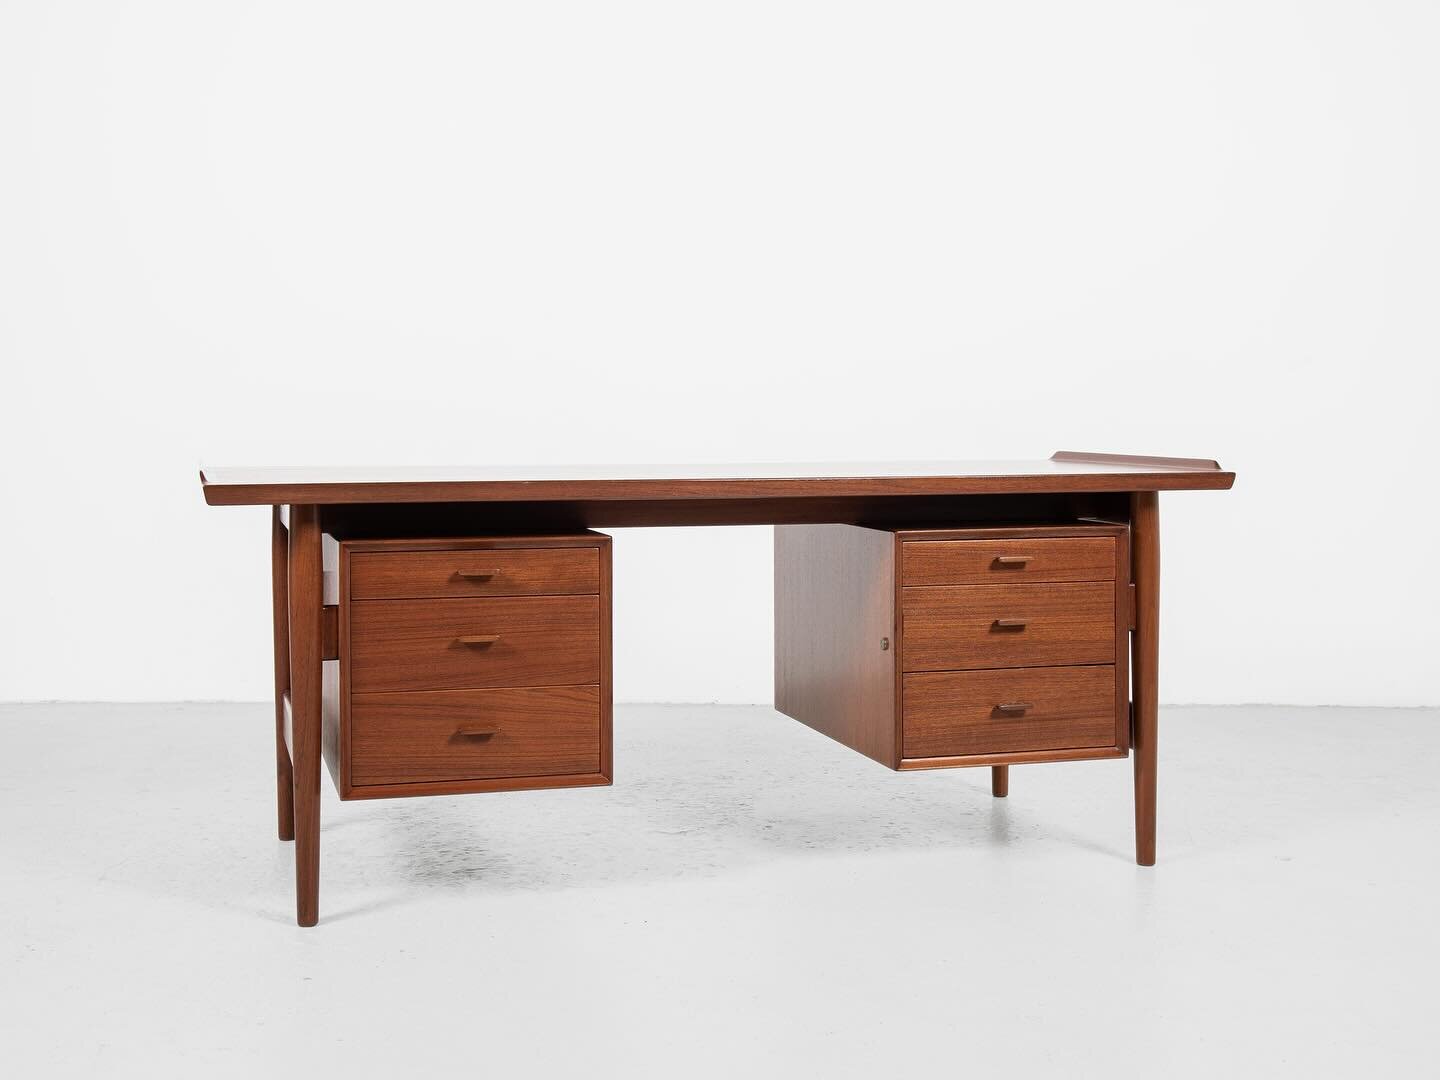 Midcentury Danish desk in teak by Arne Vodder for Sibast 1960s - 180cm #m&oslash;belfabrik #arnevodder #sibastfurniture #midcenturymodern #midcenturydanishfurniture